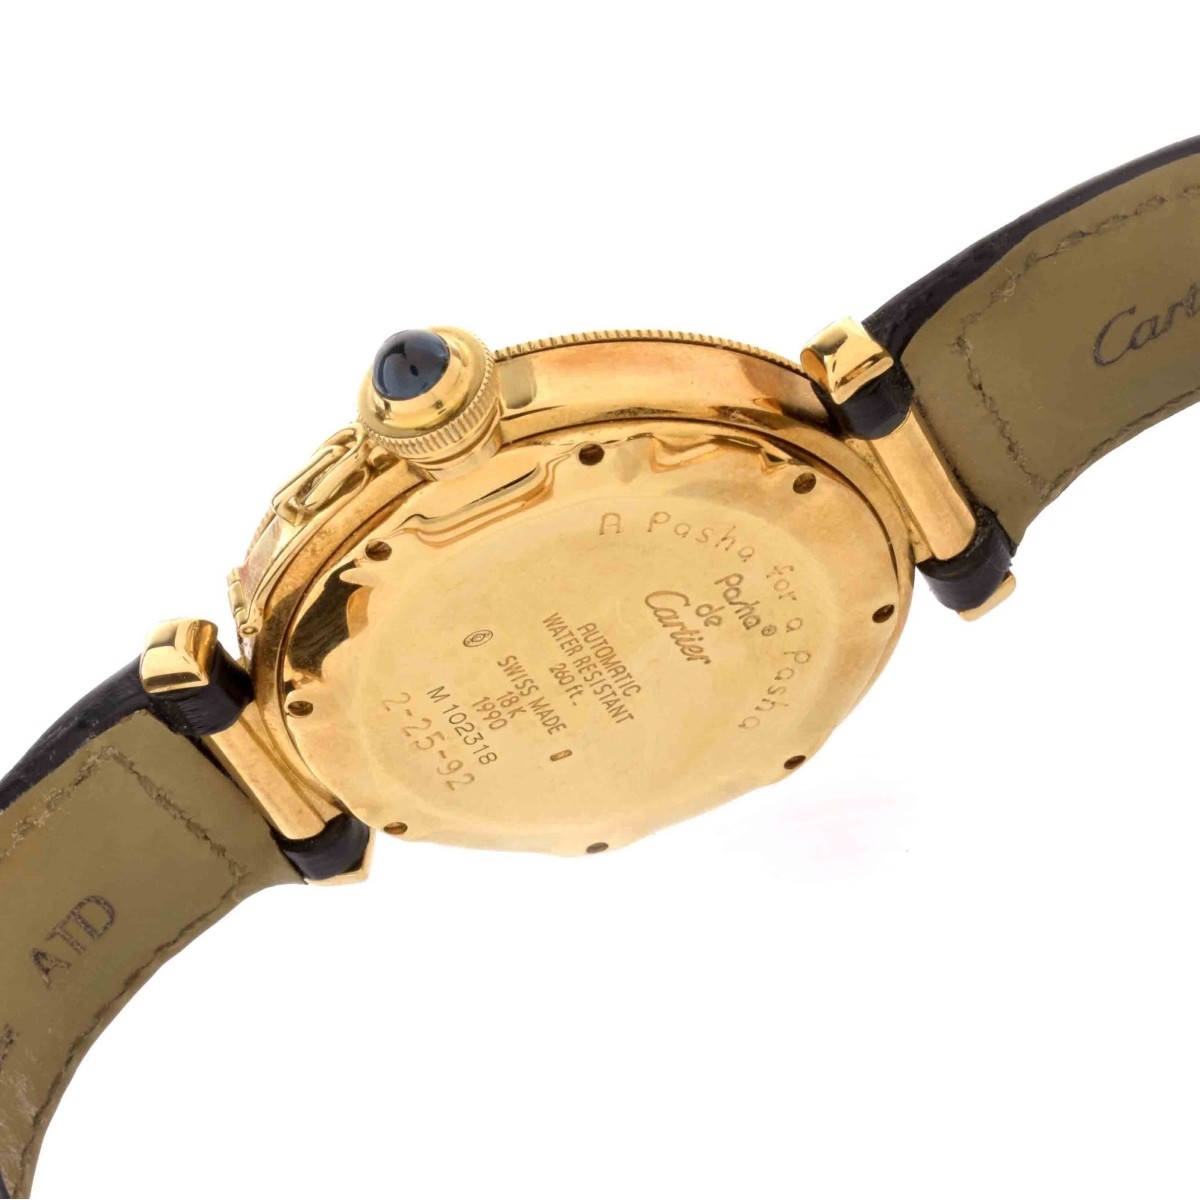 Cartier Pasha 18K Watch